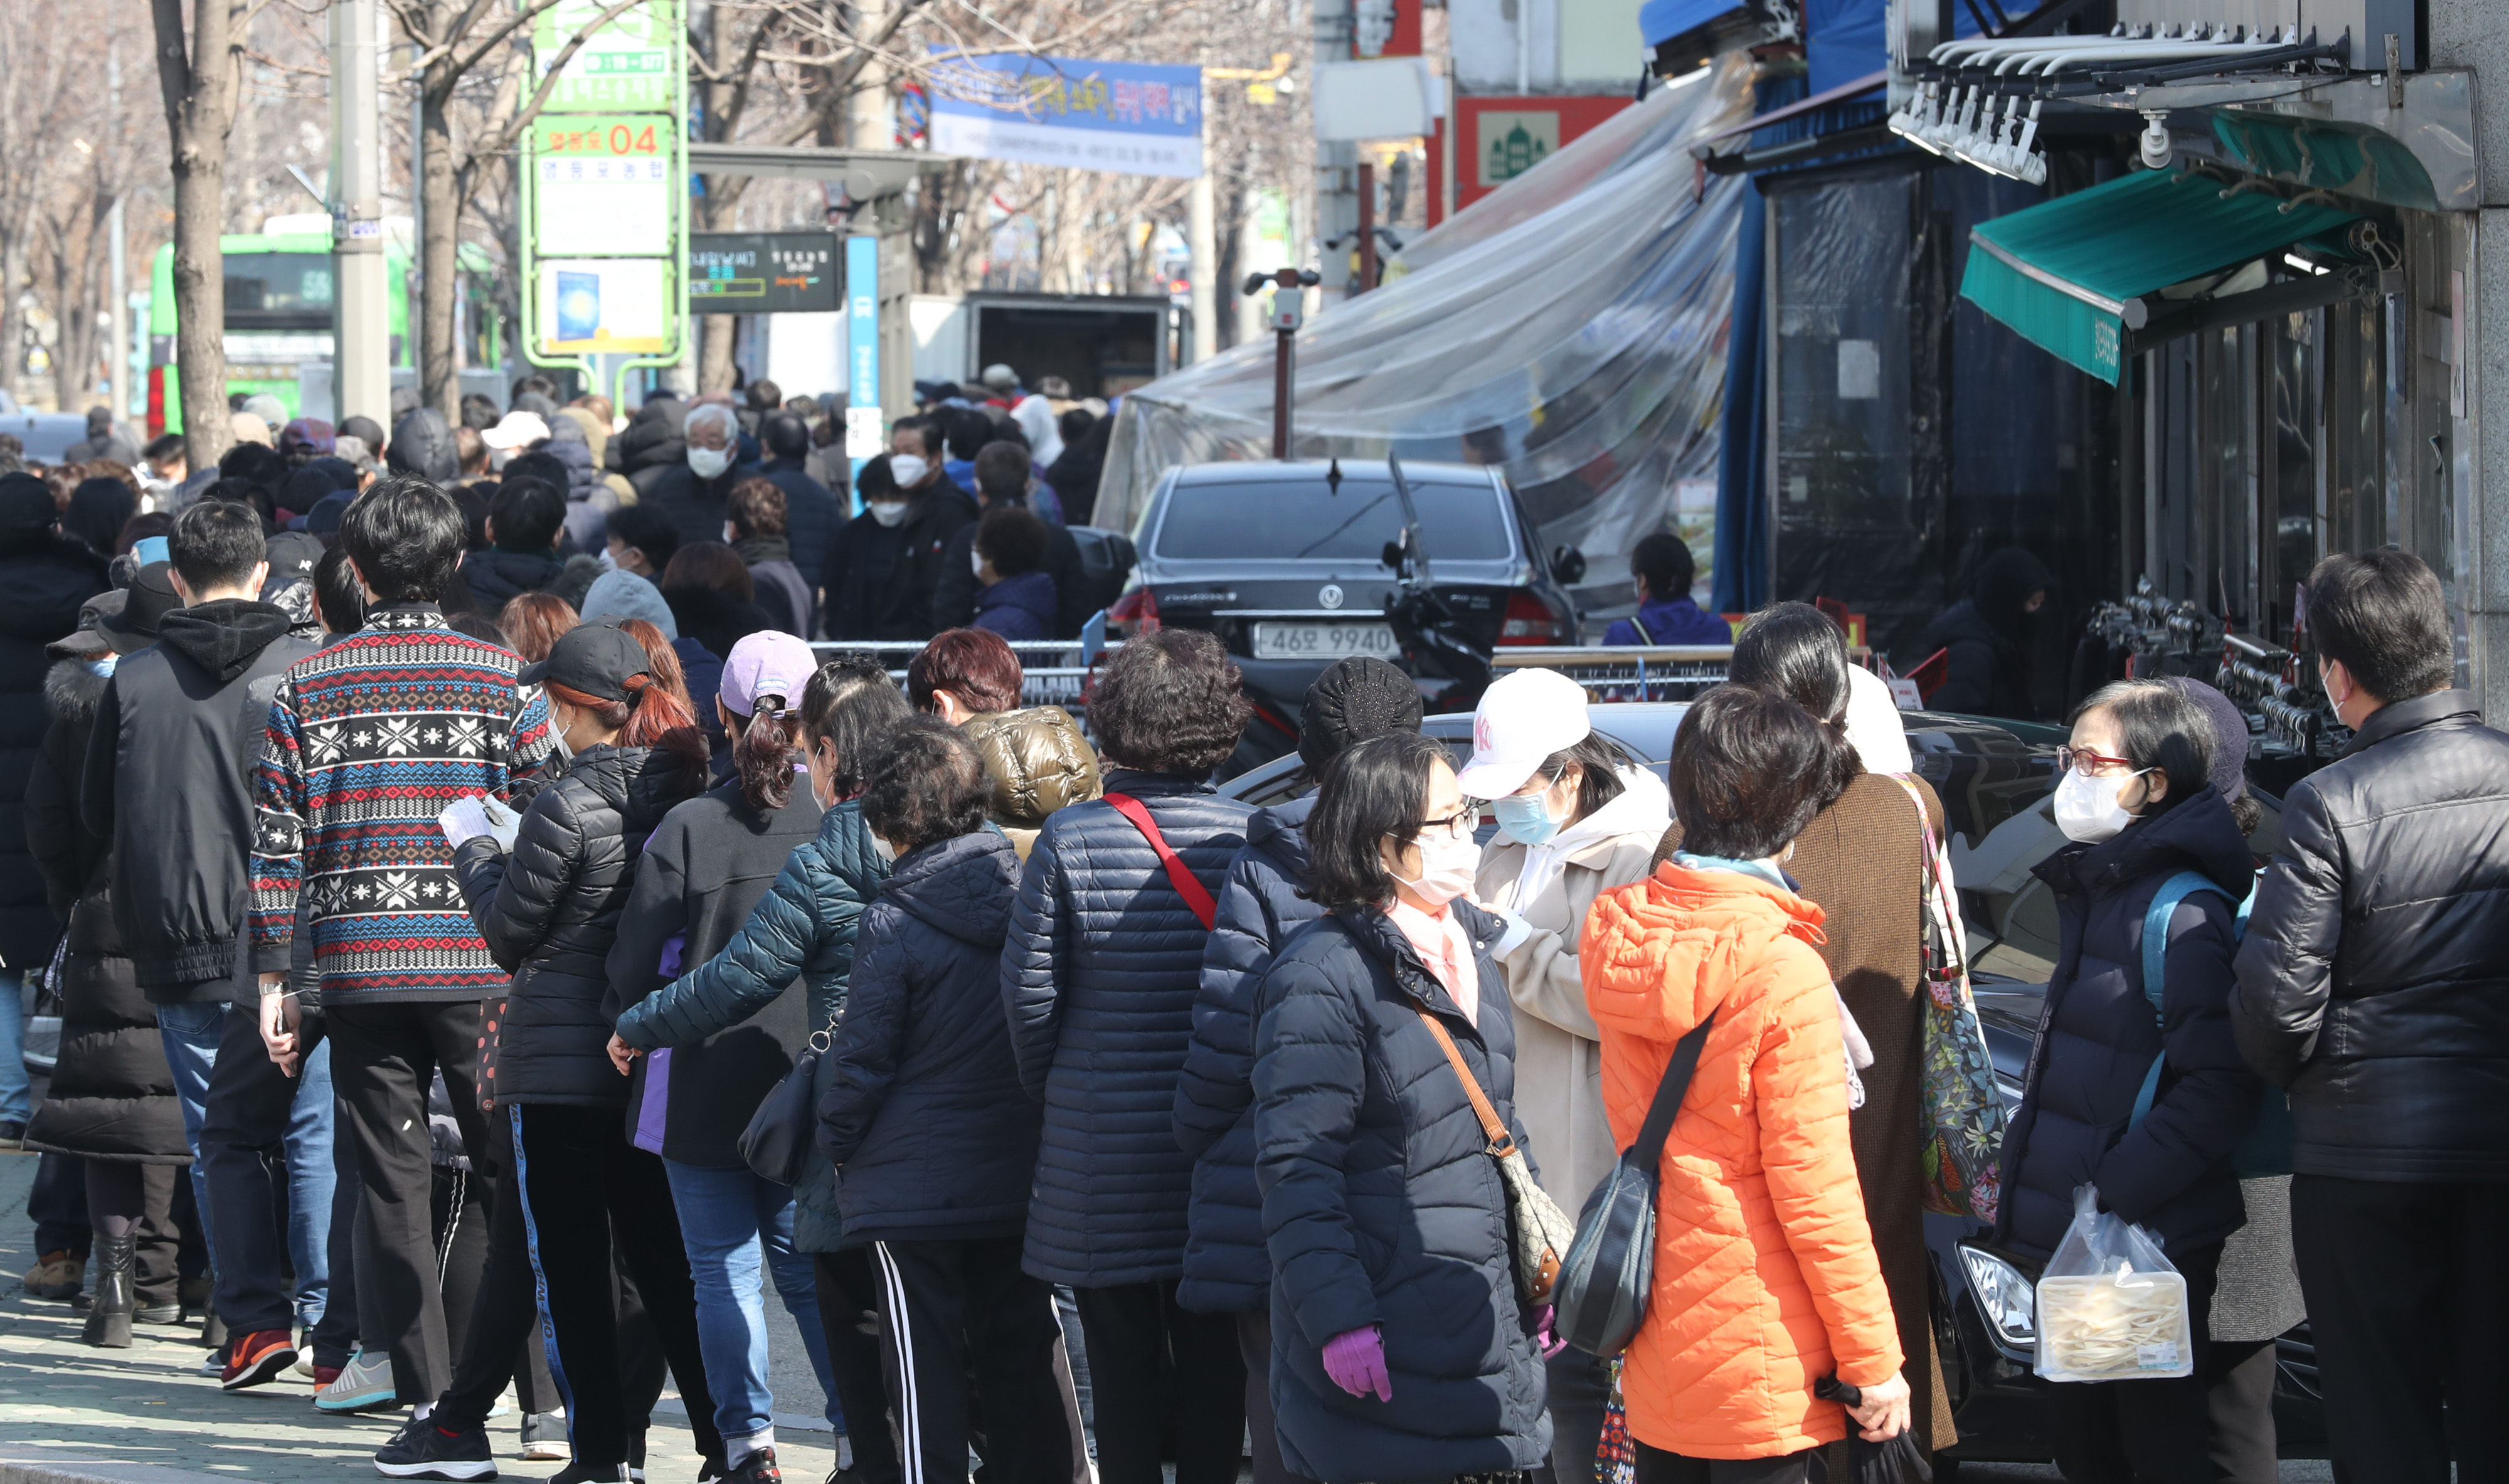 2일 서울 영등포구 하나로마트 영등포농협점에서 마스크를 사려는 시민들이 길게 줄을 서고 있다. 2020.3.2 연합뉴스